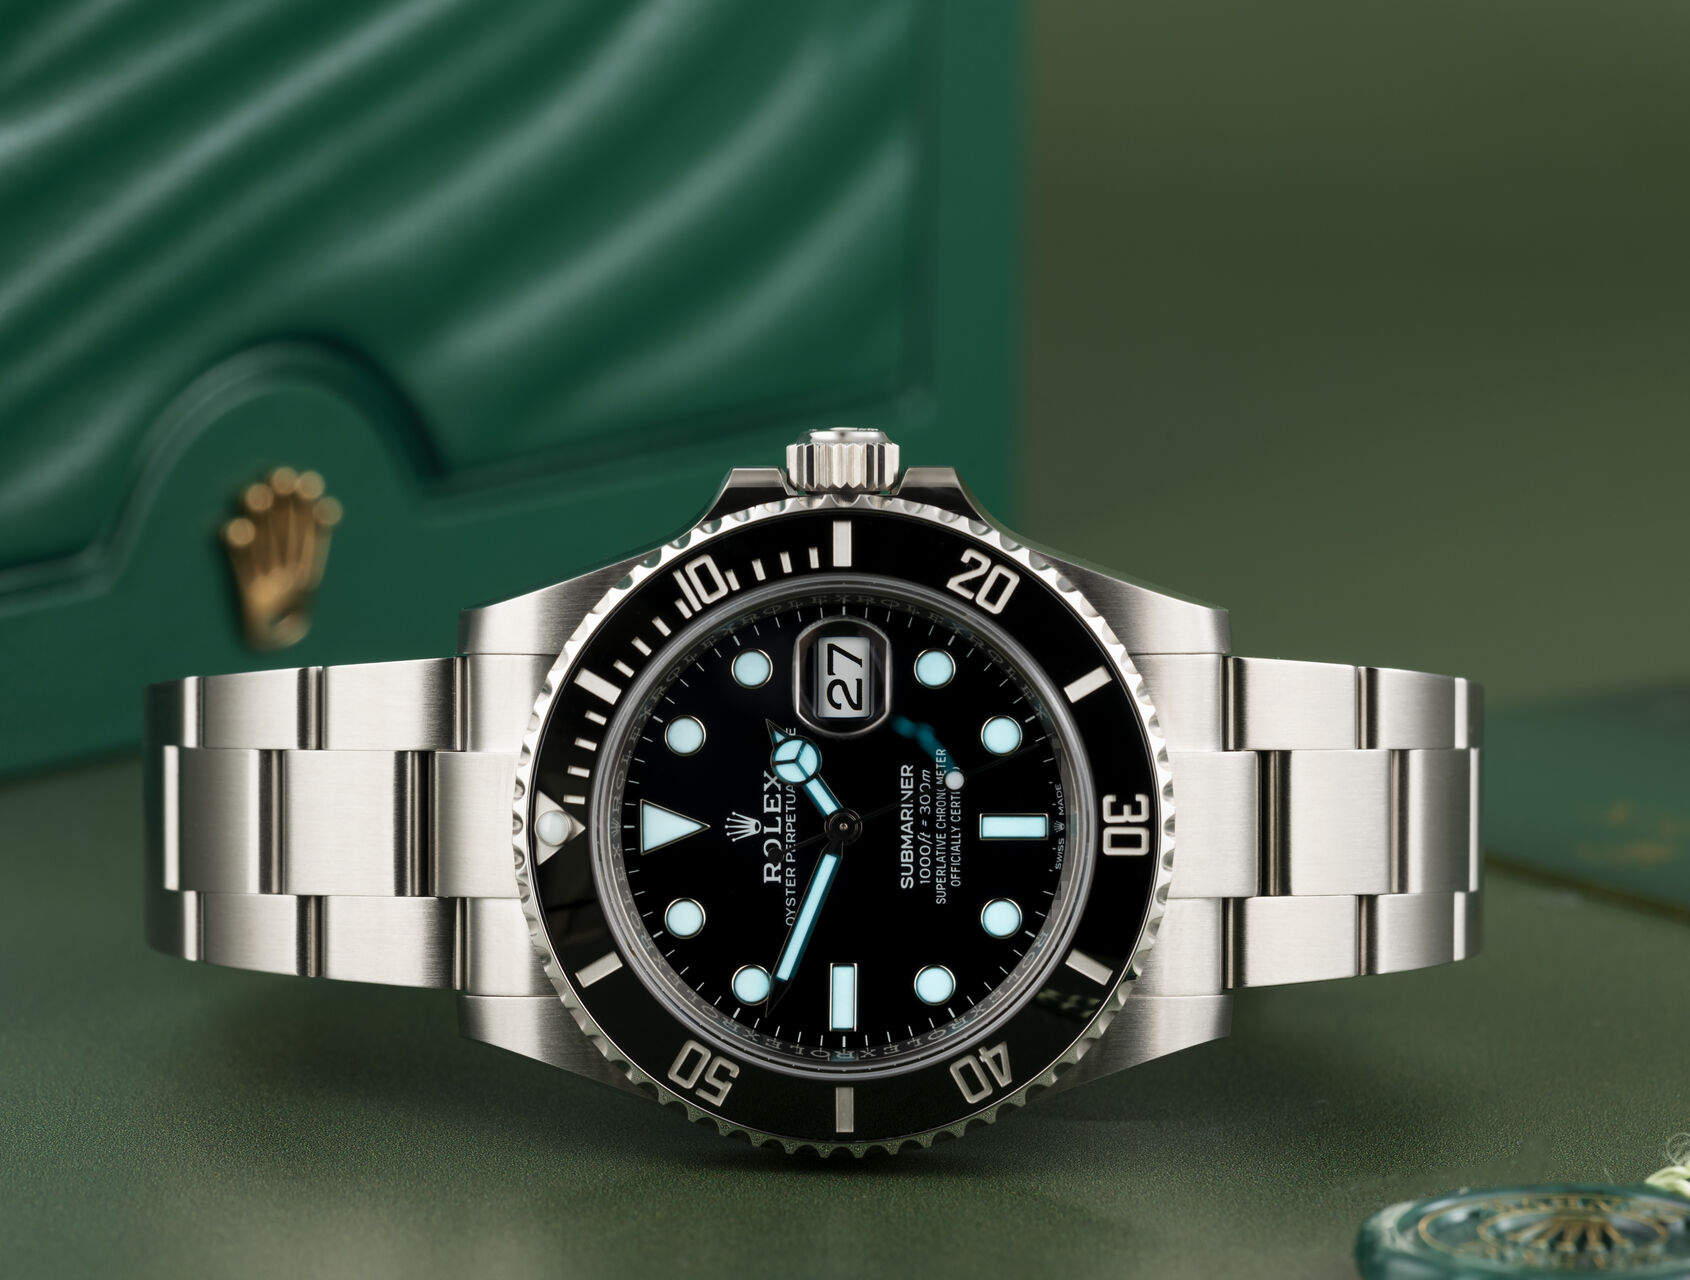 ref 126610LN | 126610LN - Brand New | Rolex Submariner Date